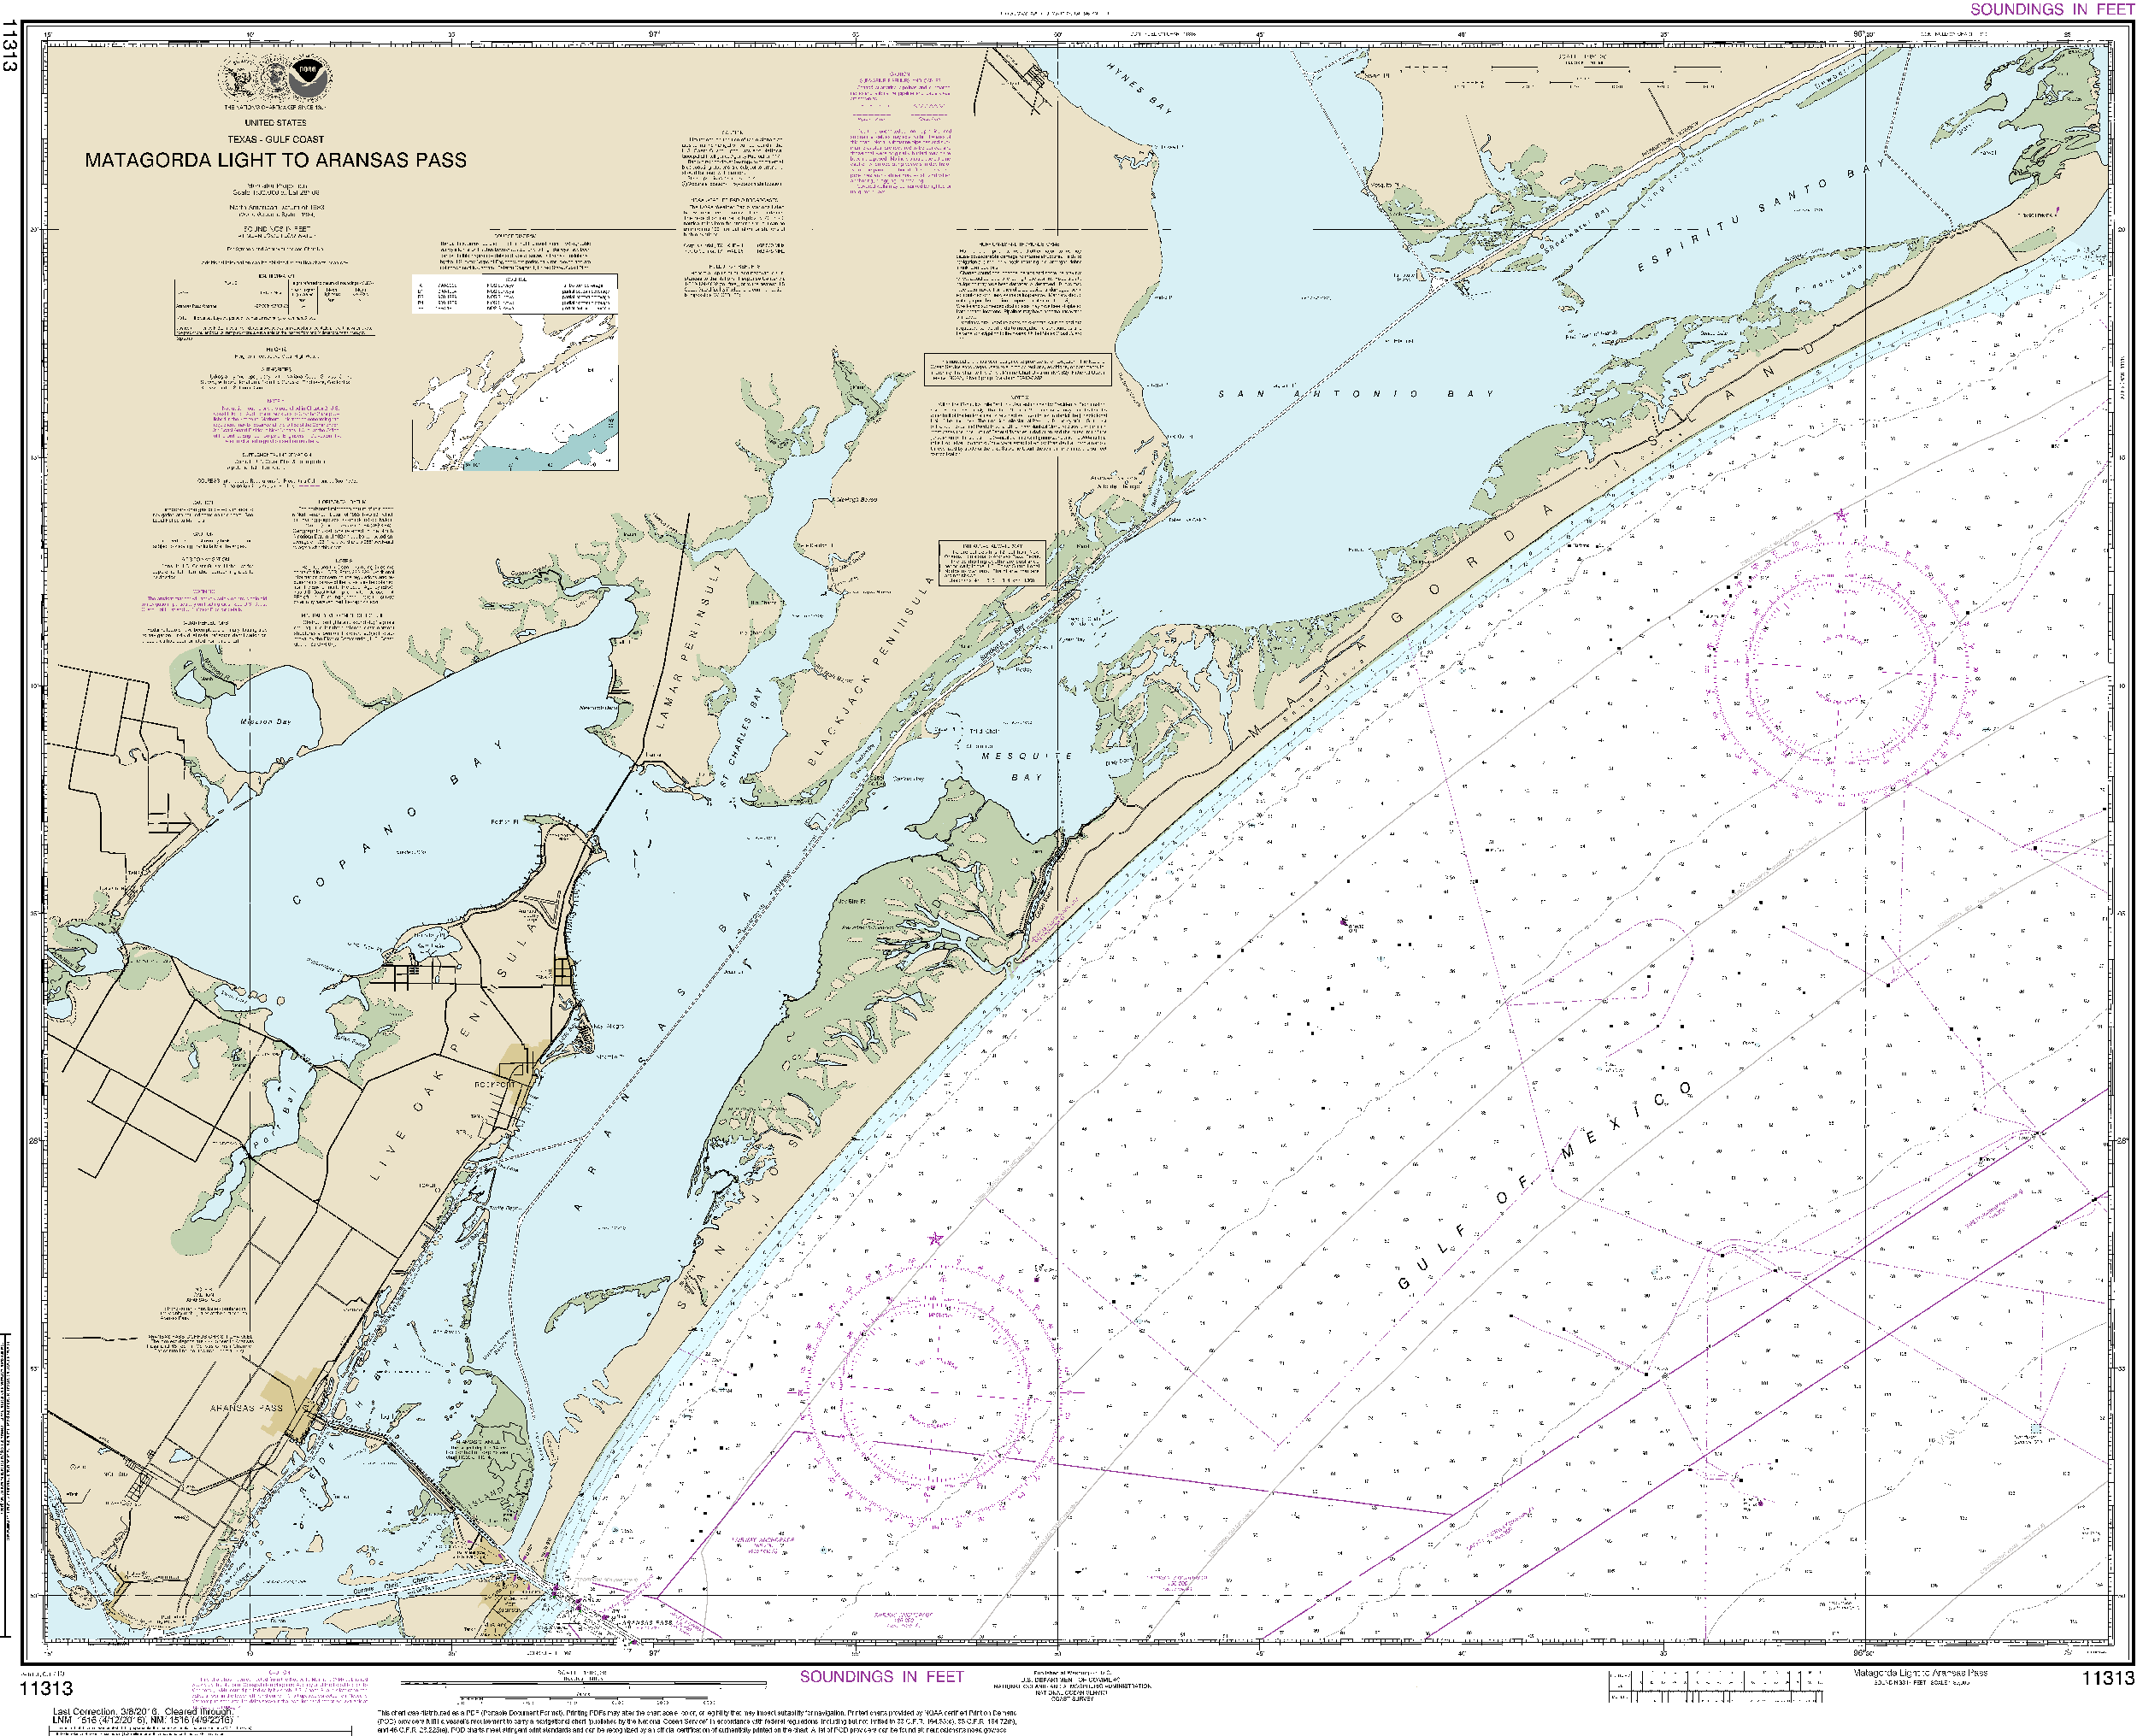 NOAA Nautical Chart 11313: Matagorda Light to Aransas Pass